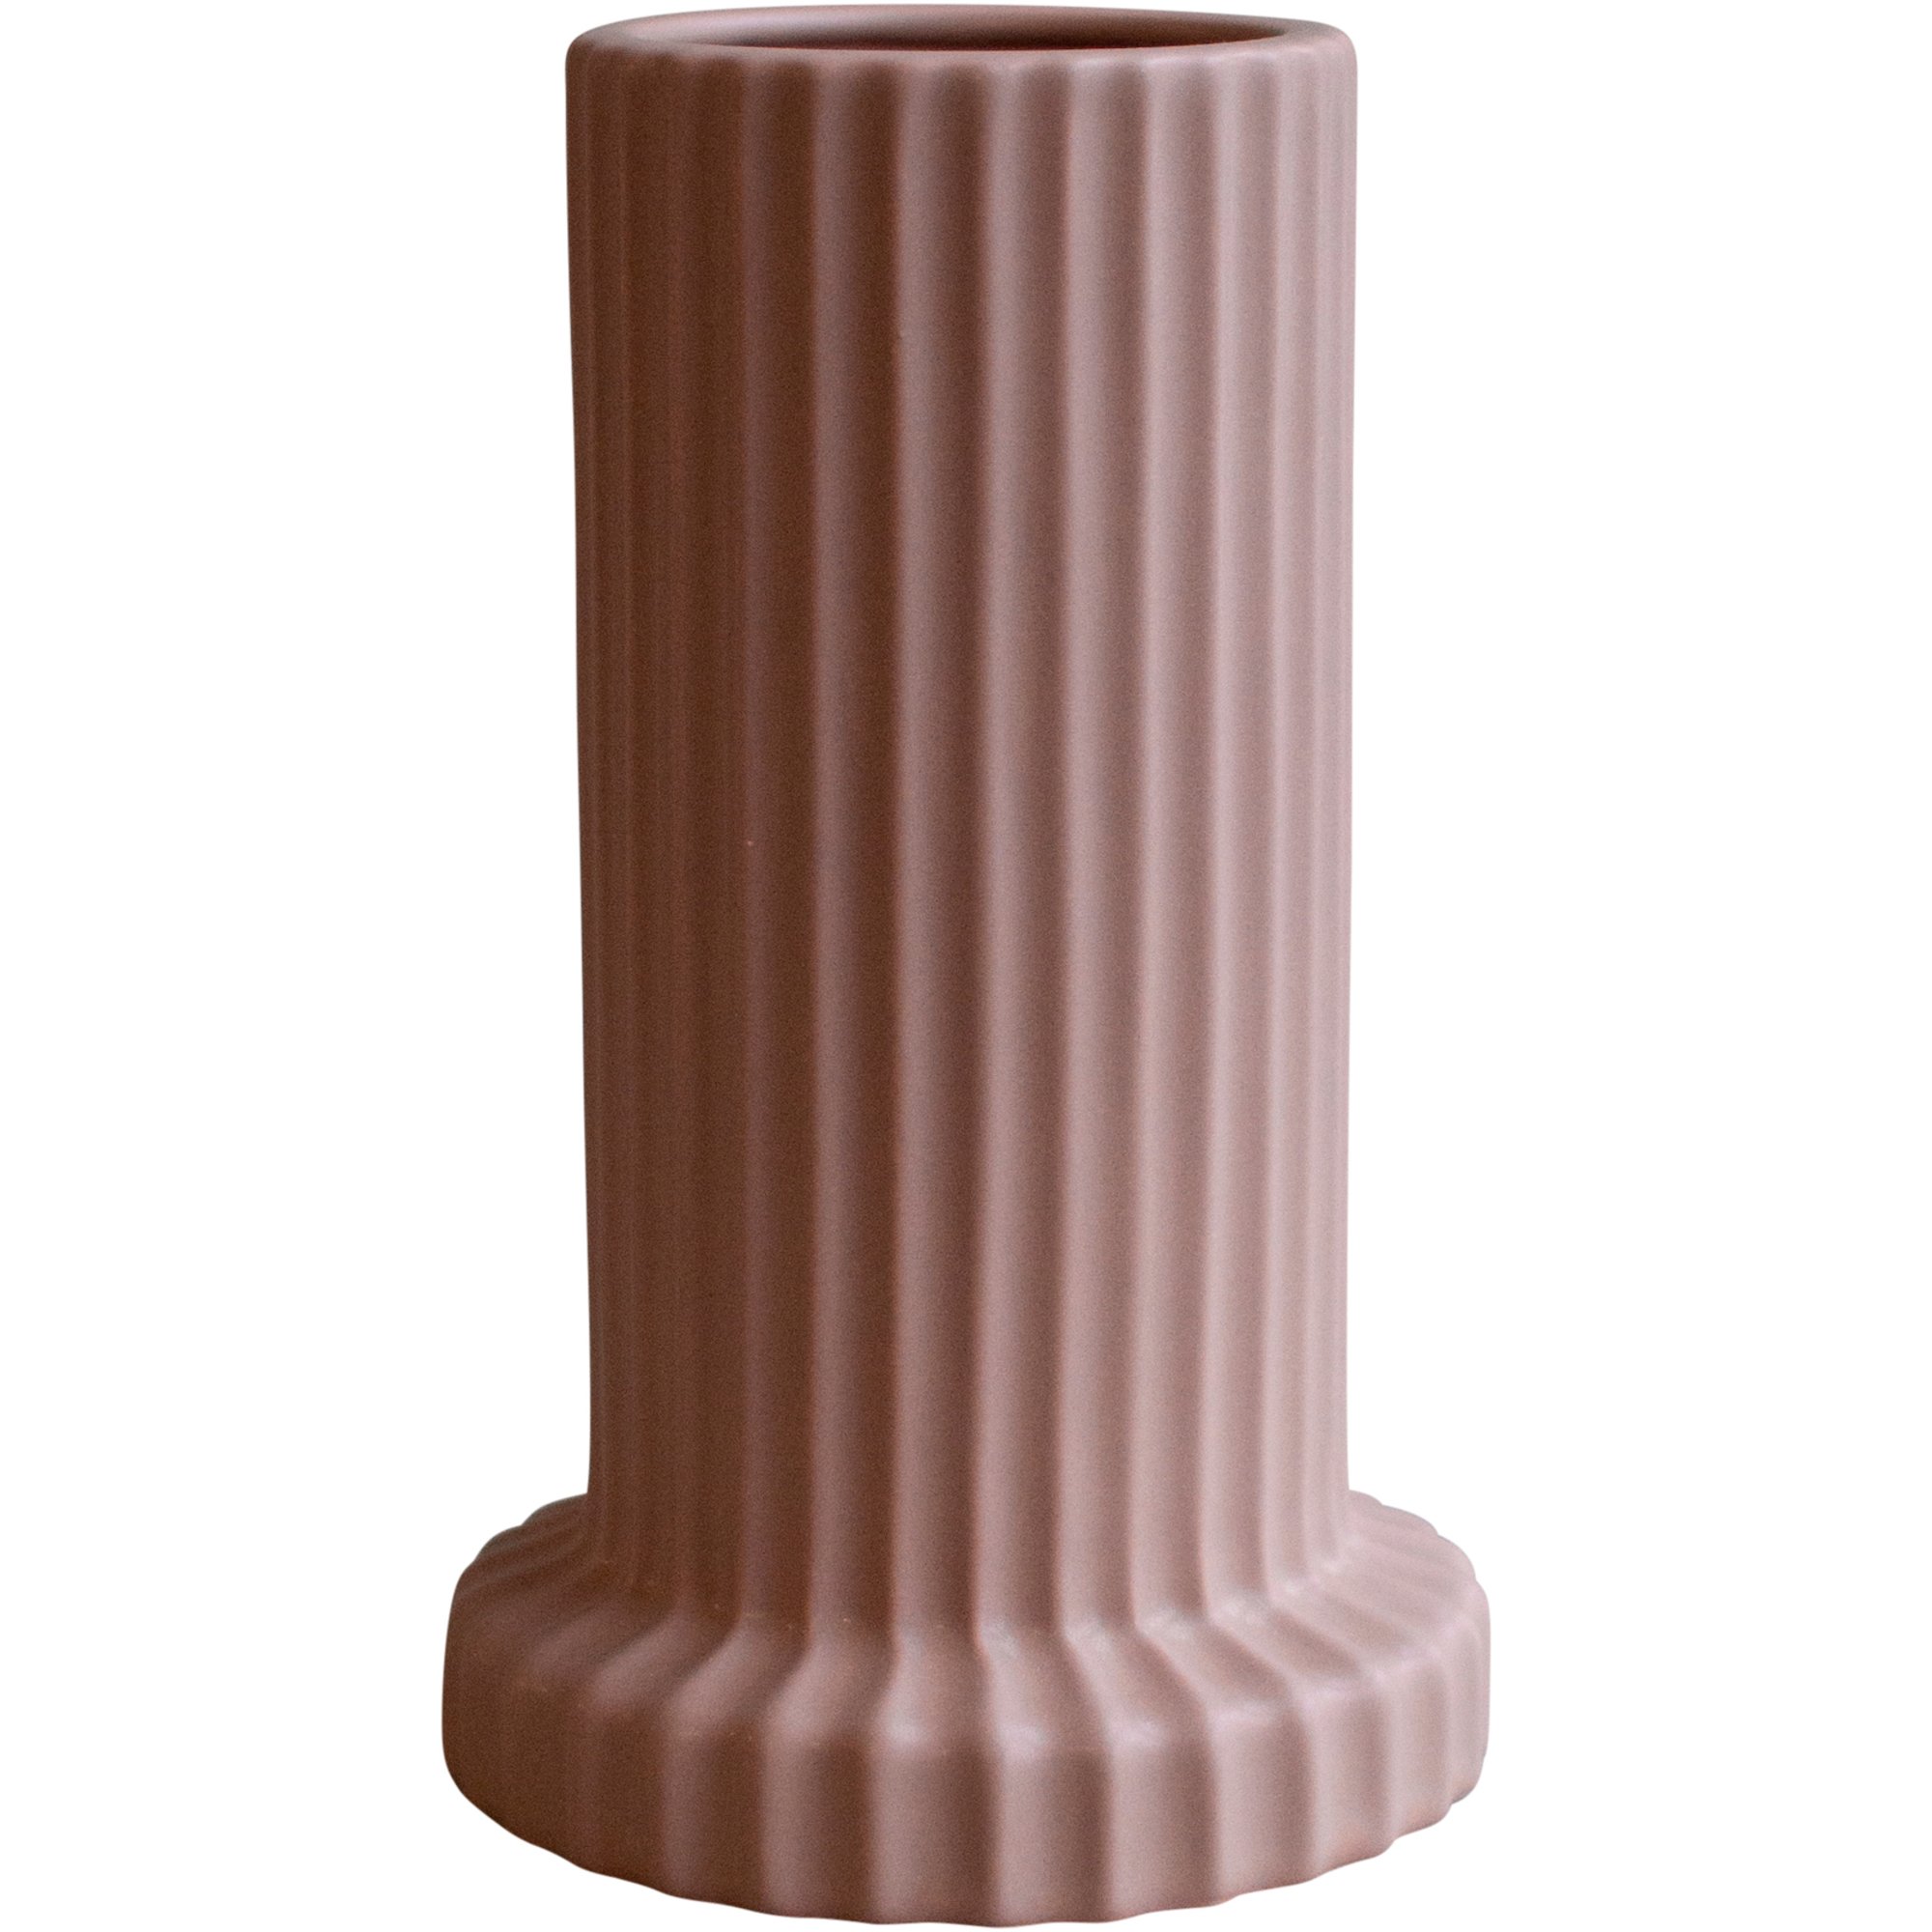 Bilde av Dbkd Stripe Vase, Apricot